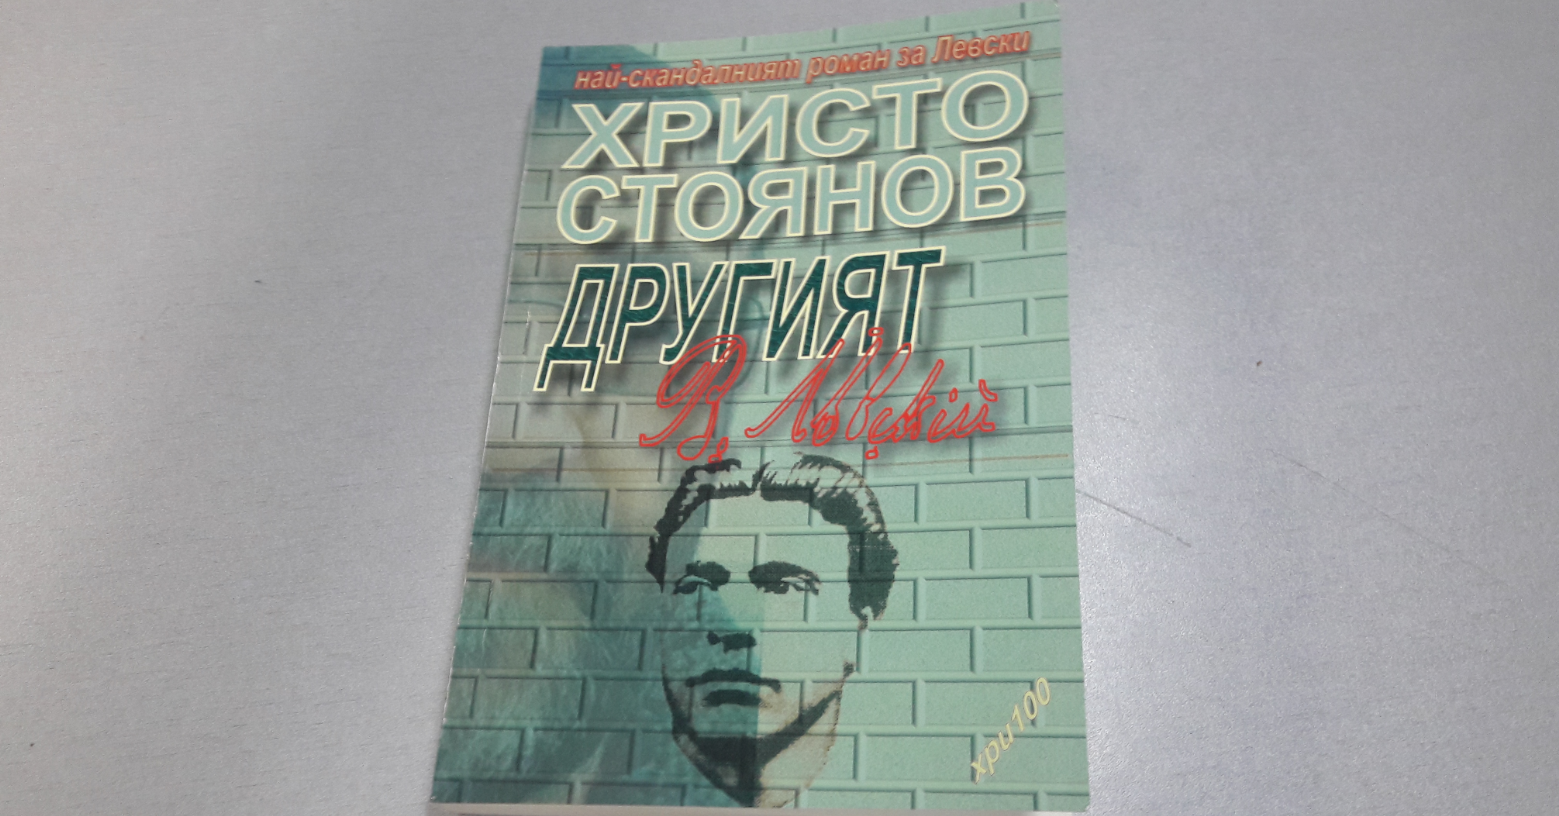 Читатели са потресени, че скандална книга за Левски се разпространява в библиотека в Иганово